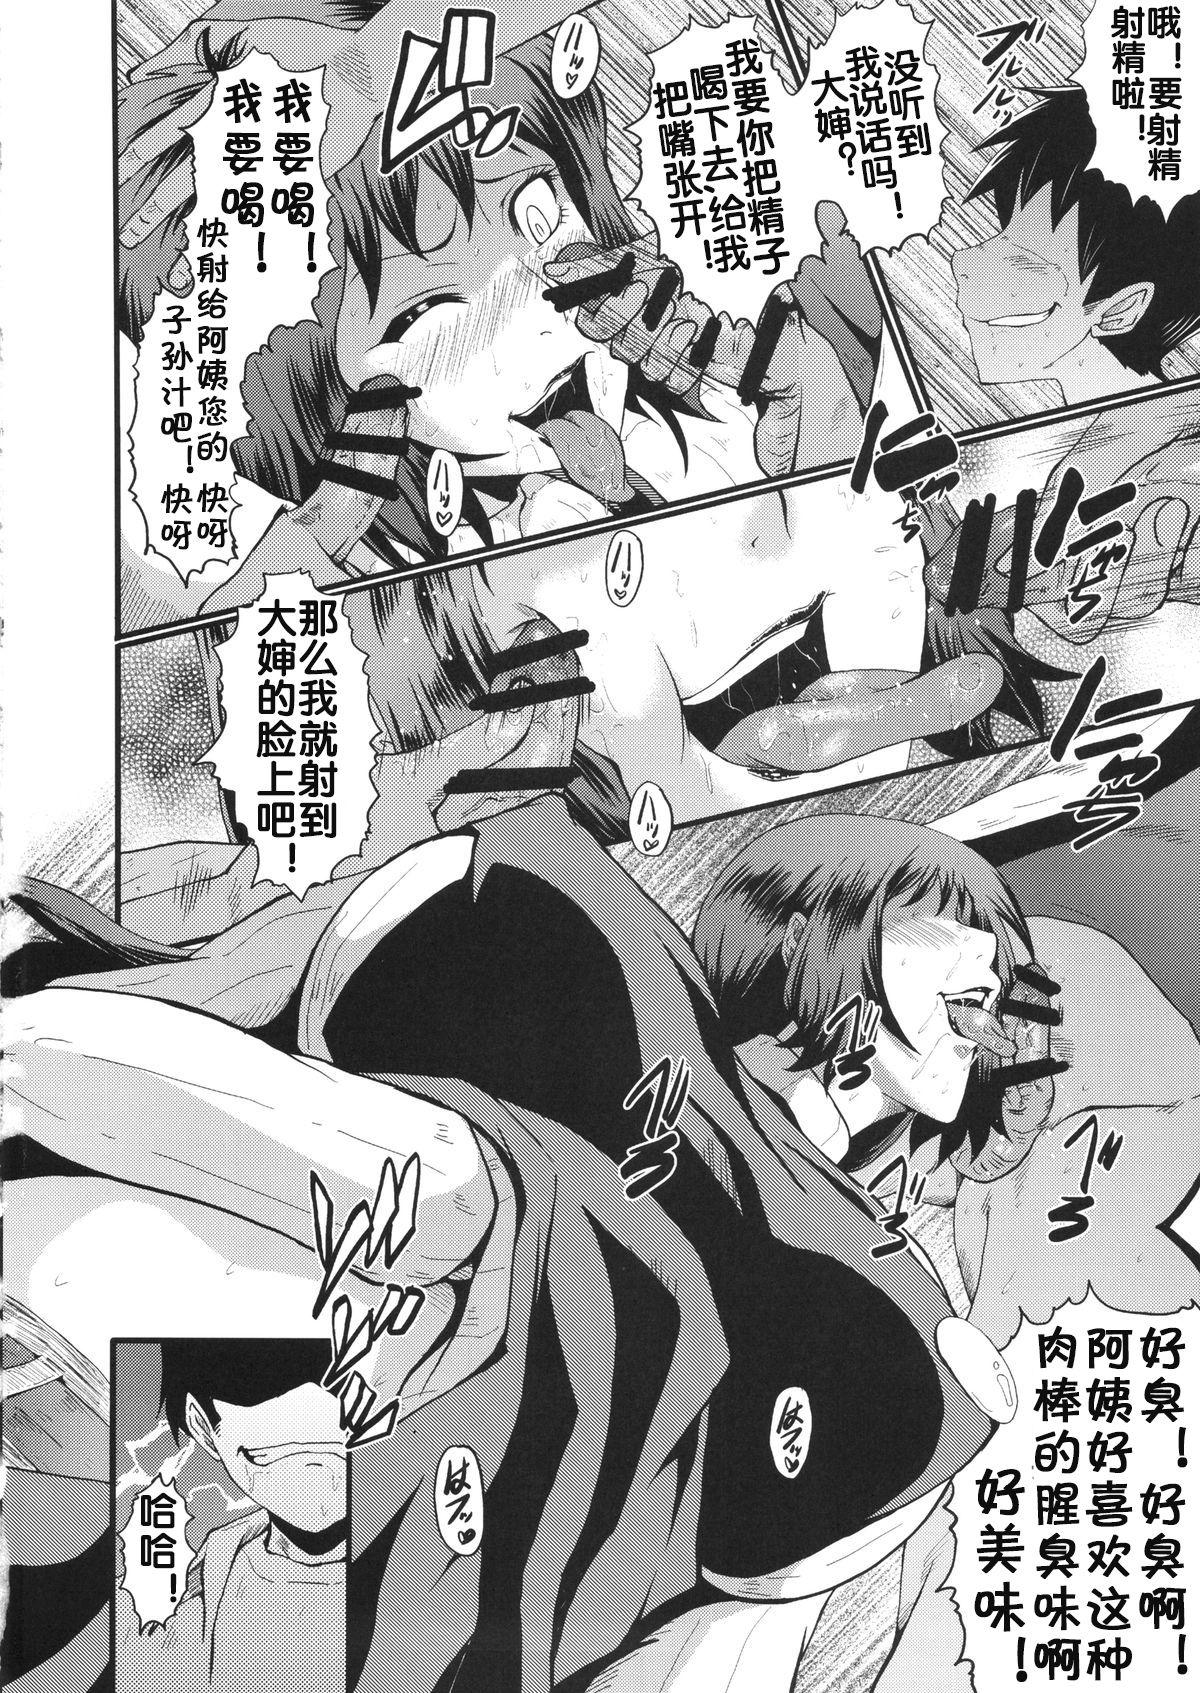 Rubdown Urabambi Vol. 49 Kaa-san wa Boku ga Shiranai Uchi ni Omanko ni DoHamari shite mashita. - Gundam build fighters Gay Gloryhole - Page 9